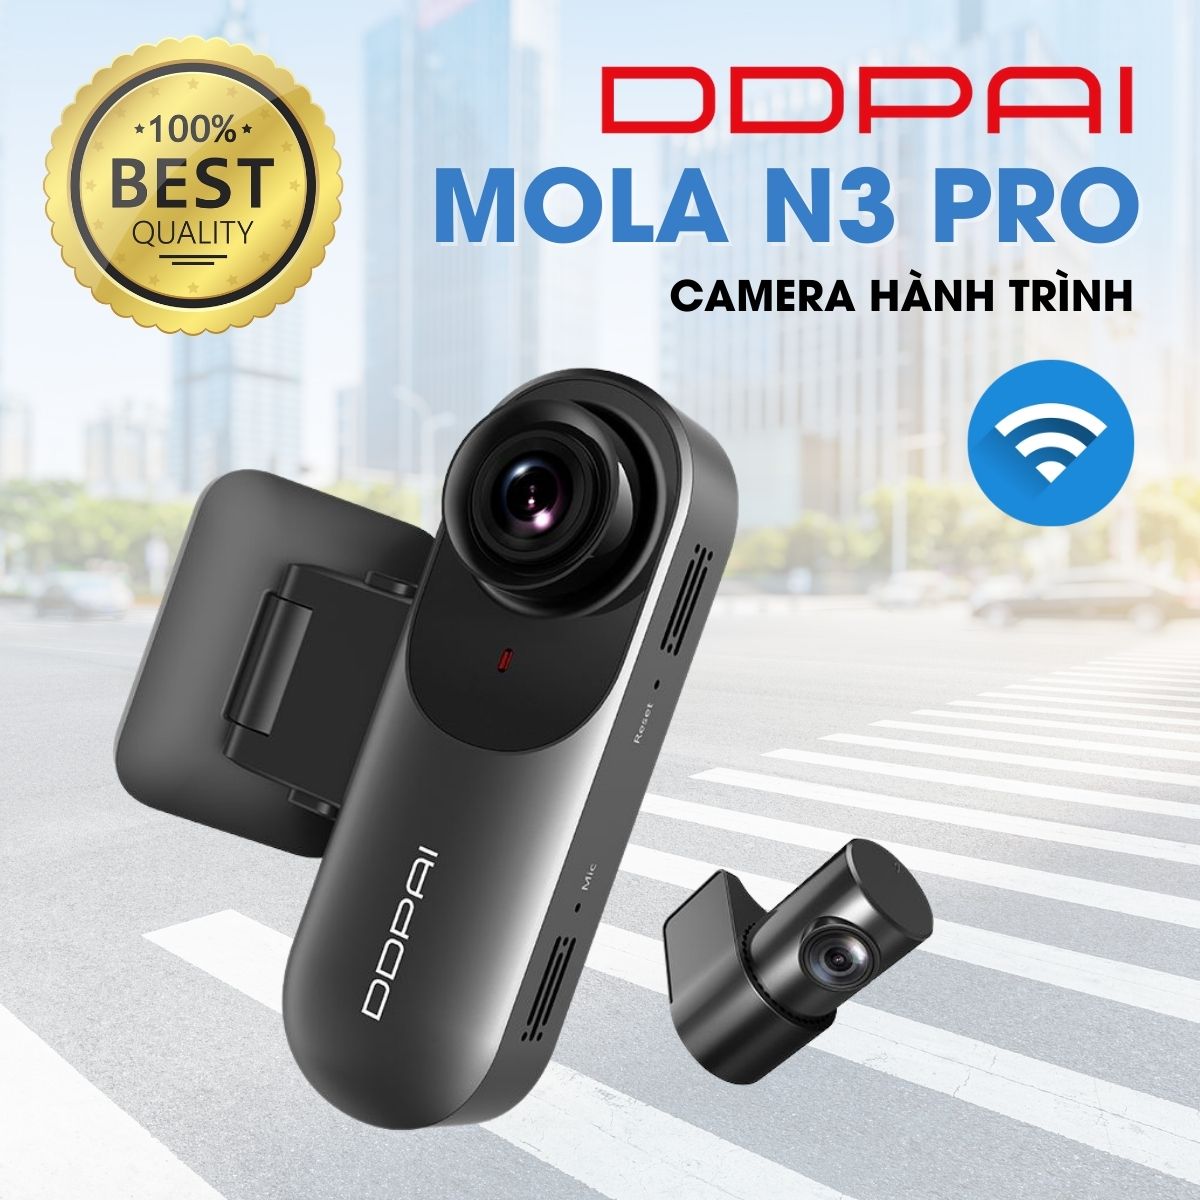 Camera hành trình DDPai Mola N3 Pro 1600P 5MP, GPS, wifi